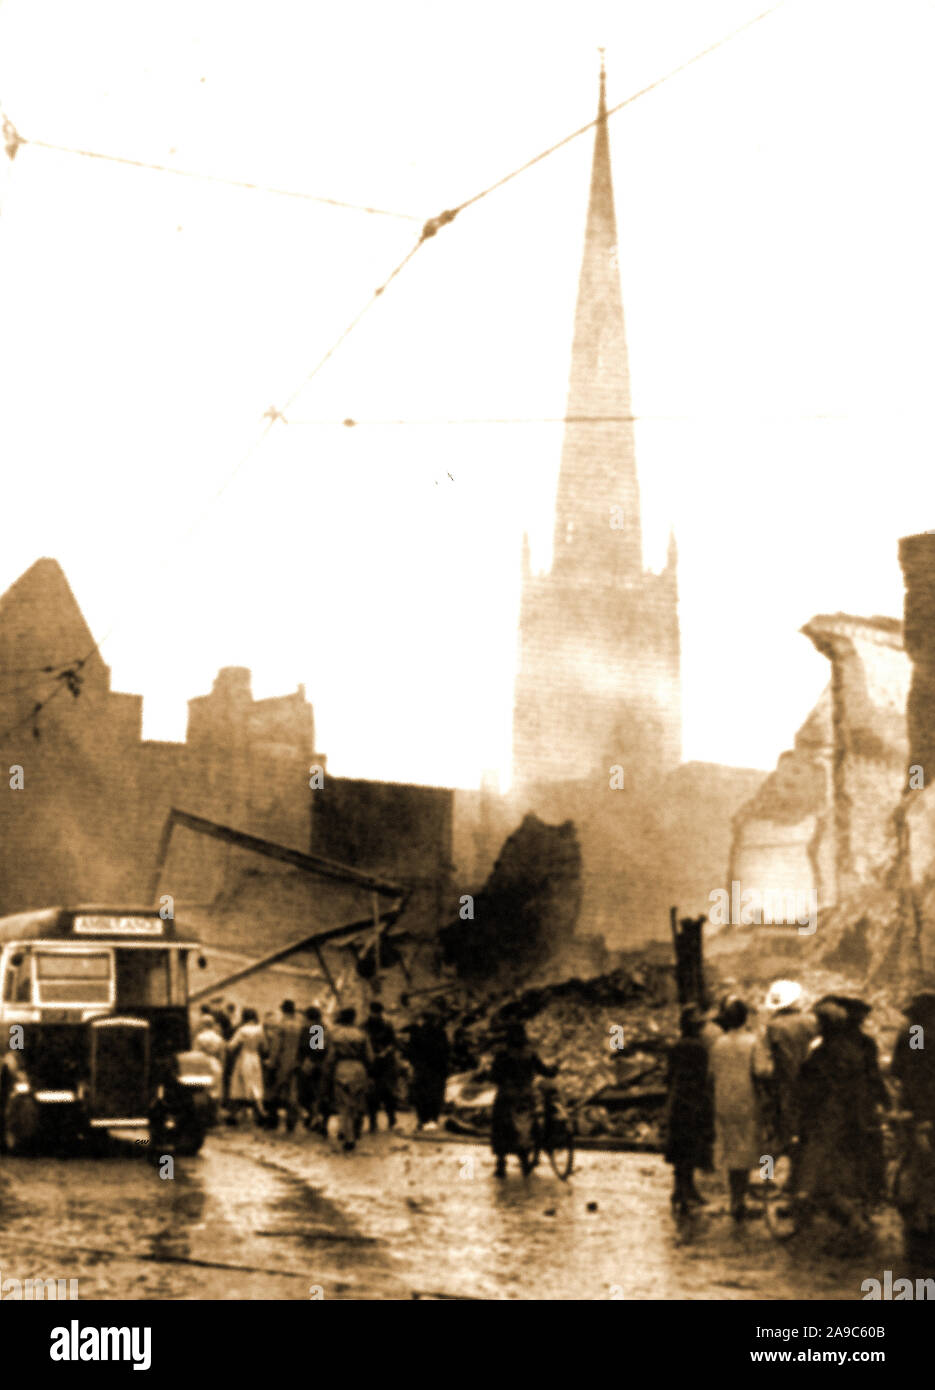 Durante la Seconda guerra mondiale - un bus essendo utilizzato come un ambulanza dopo i devastanti bombardamenti raid su Coventry Regno Unito nel 1941 (Coventry Blitz). Chiesa della Santa Trinità si innalza al di sopra di una scena di devastazione totale. Foto Stock